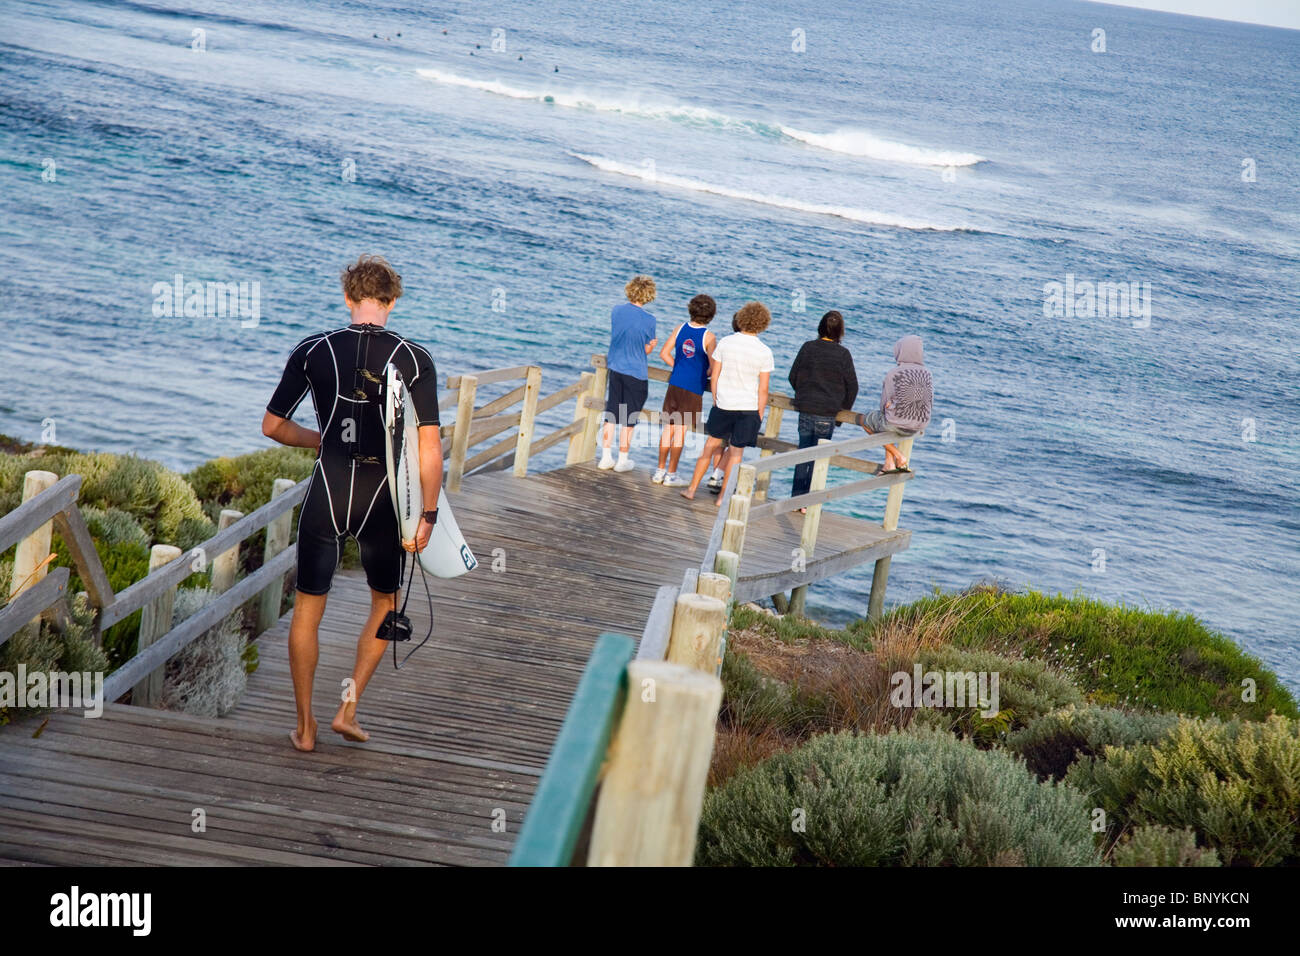 Une tête en bas pour les surfeurs Surfer's Point, une pause de surf de renommée mondiale connue localement sous le nom de Margaret's. Margaret River, Australie-Occidentale, Banque D'Images